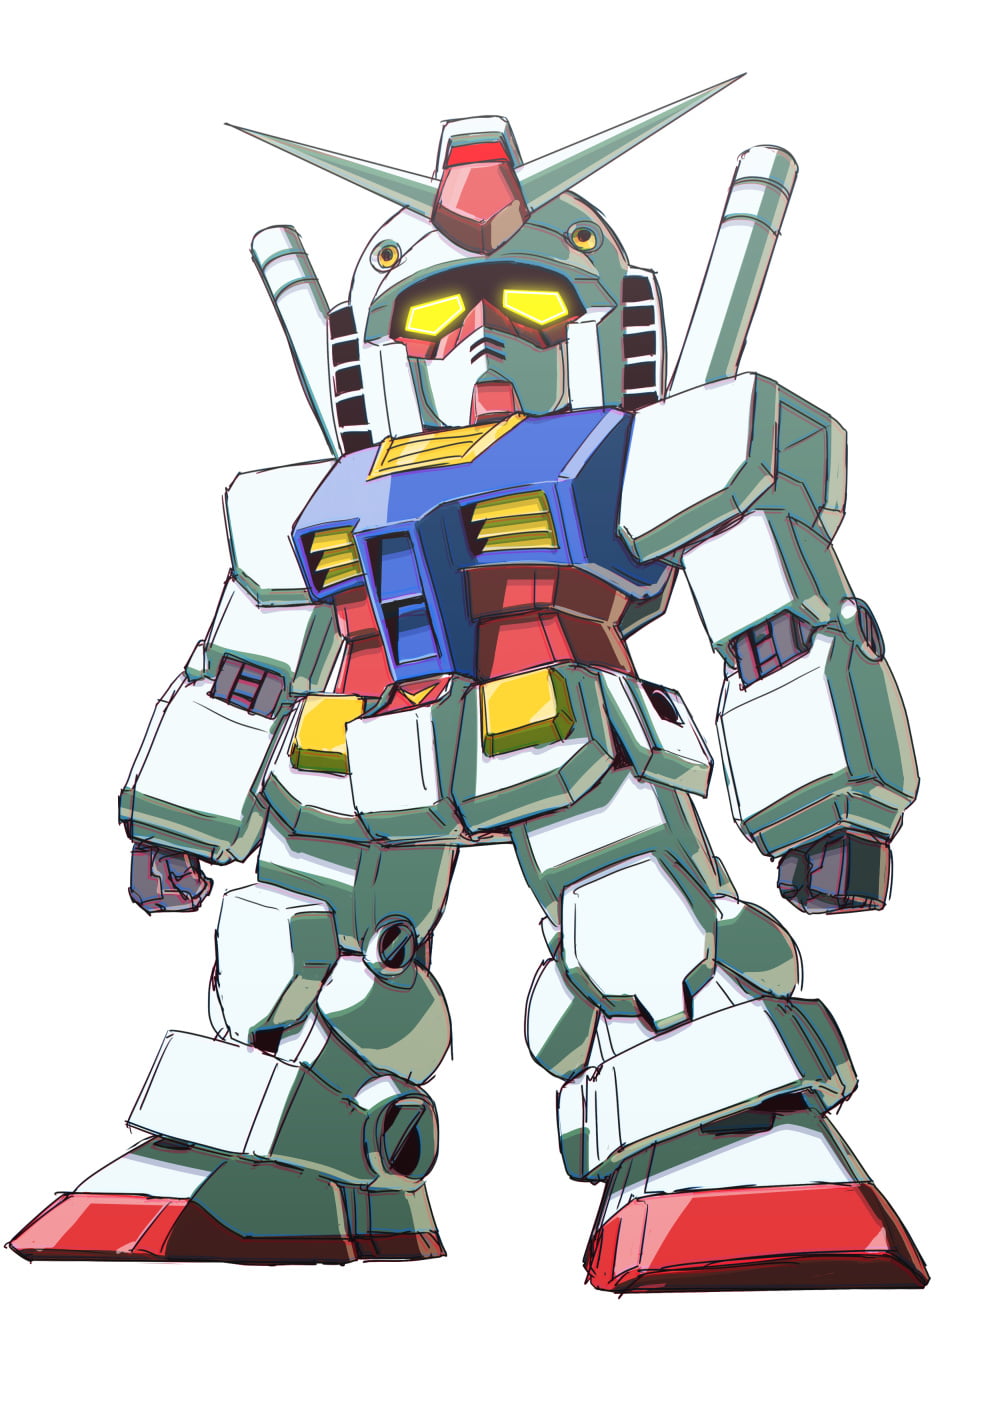 RX-78 Gundam, Mobile Suit Gundam, anime, mechs, Super Robot Taisen